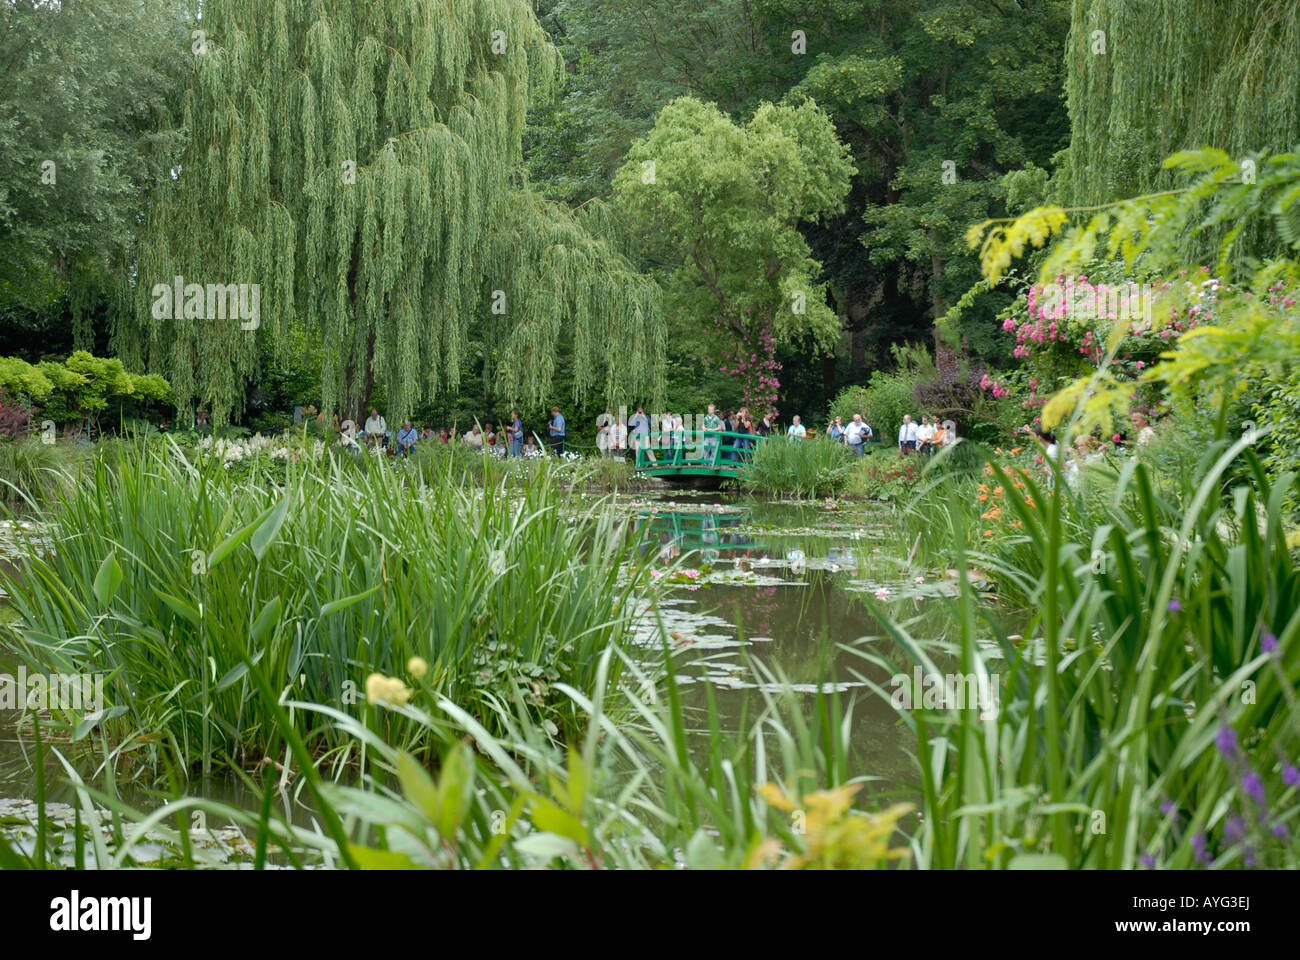 Le pont Japaness dans l'eau jardin de Claude Monet peintre impressionniste français célèbre 18401926 Giverny Normandie France Banque D'Images